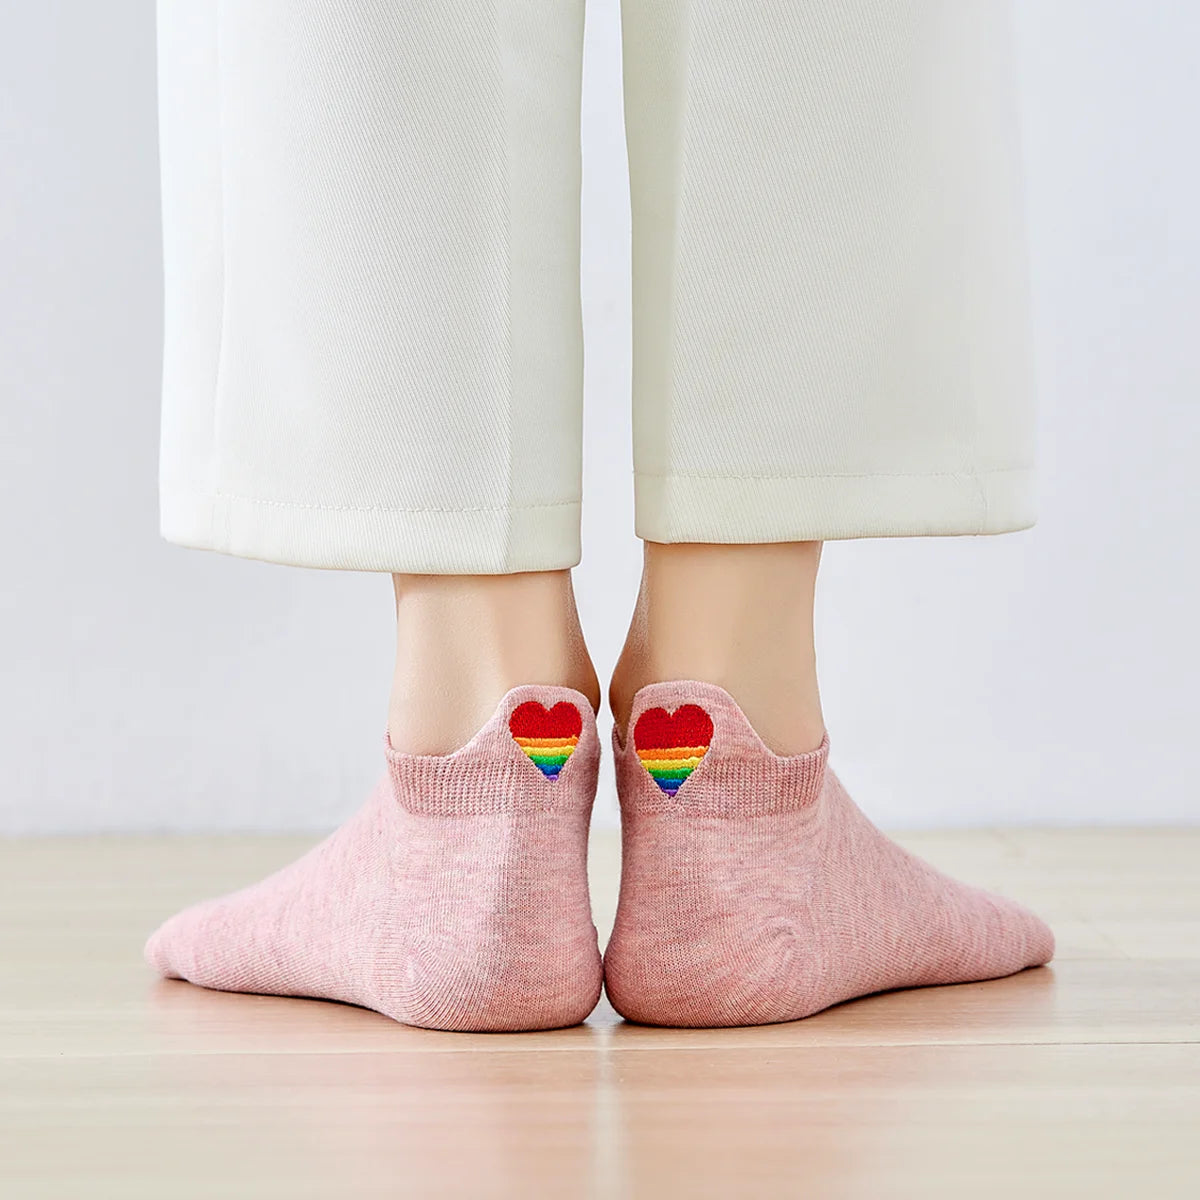 Chaussettes roses en coton à languette cœur arc-en-ciel pour femme | Chaussettes confortables et élégantes | Idéales pour le quotidien ou les occasions spéciales